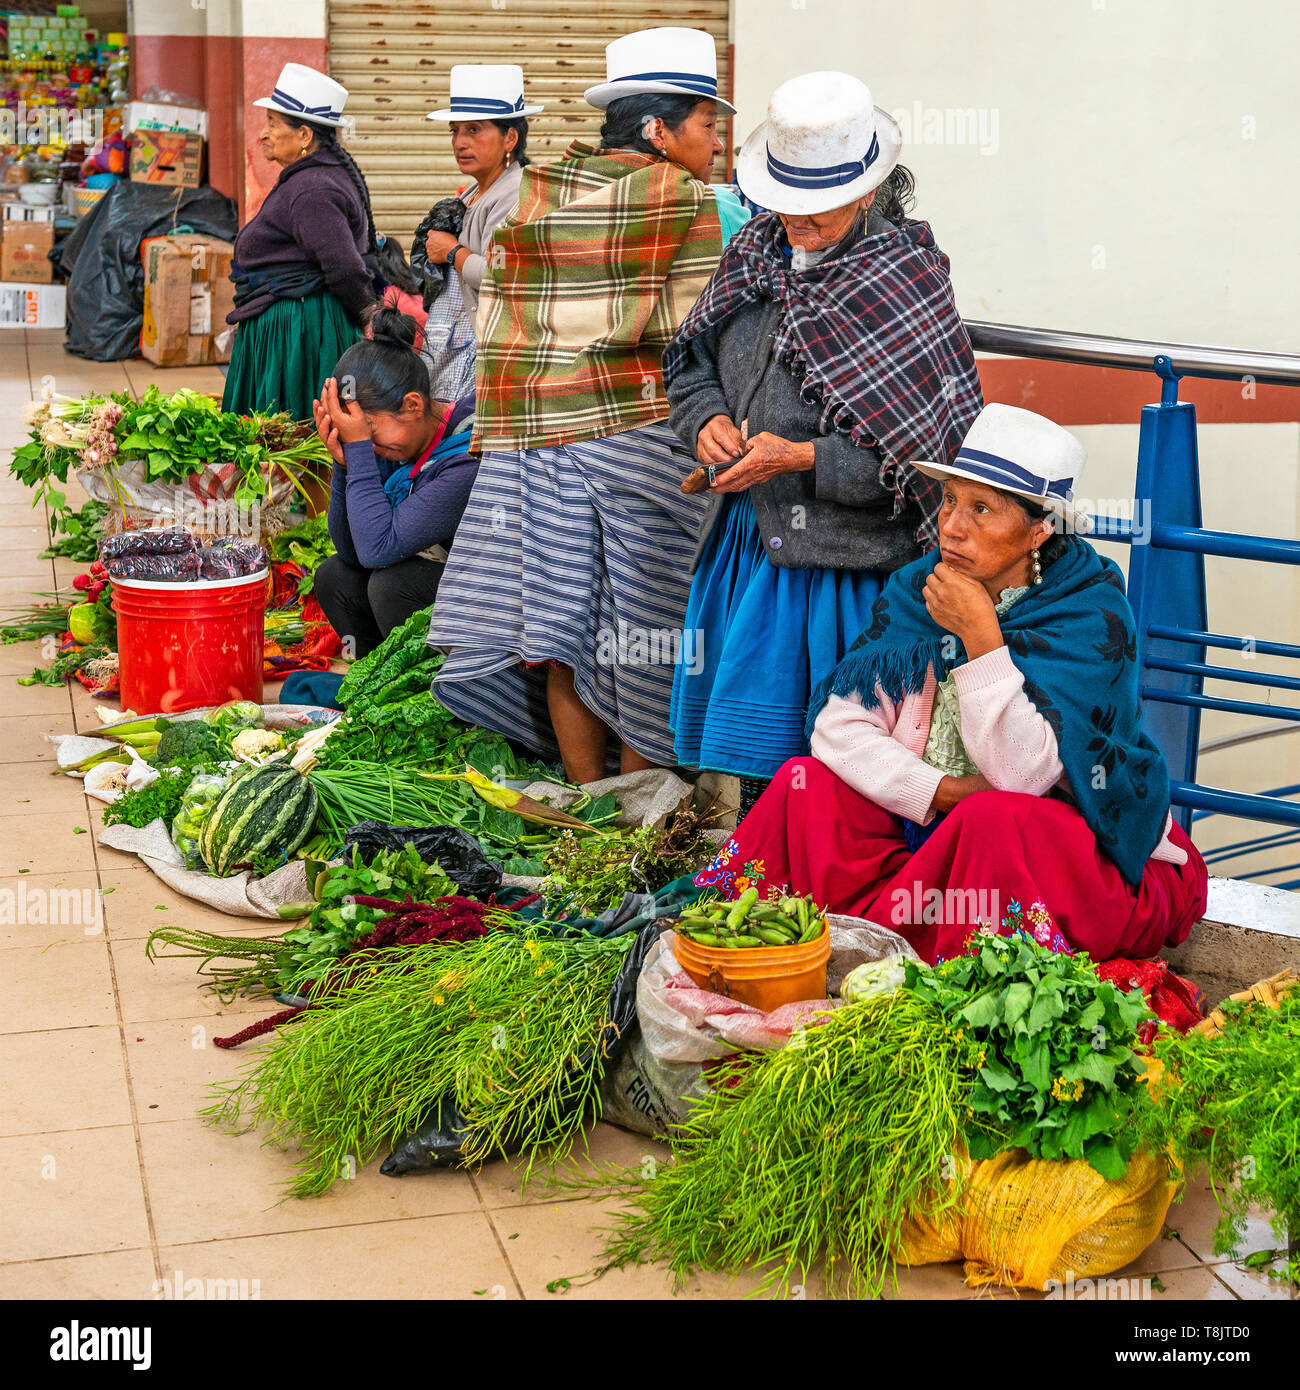 Indigeni vendite ecuadoriana di donne in abiti tradizionali e Panama cappelli vendita di ortaggi all'interno della piscina mercato locale della città di Cuenca, Ecuador. Foto Stock